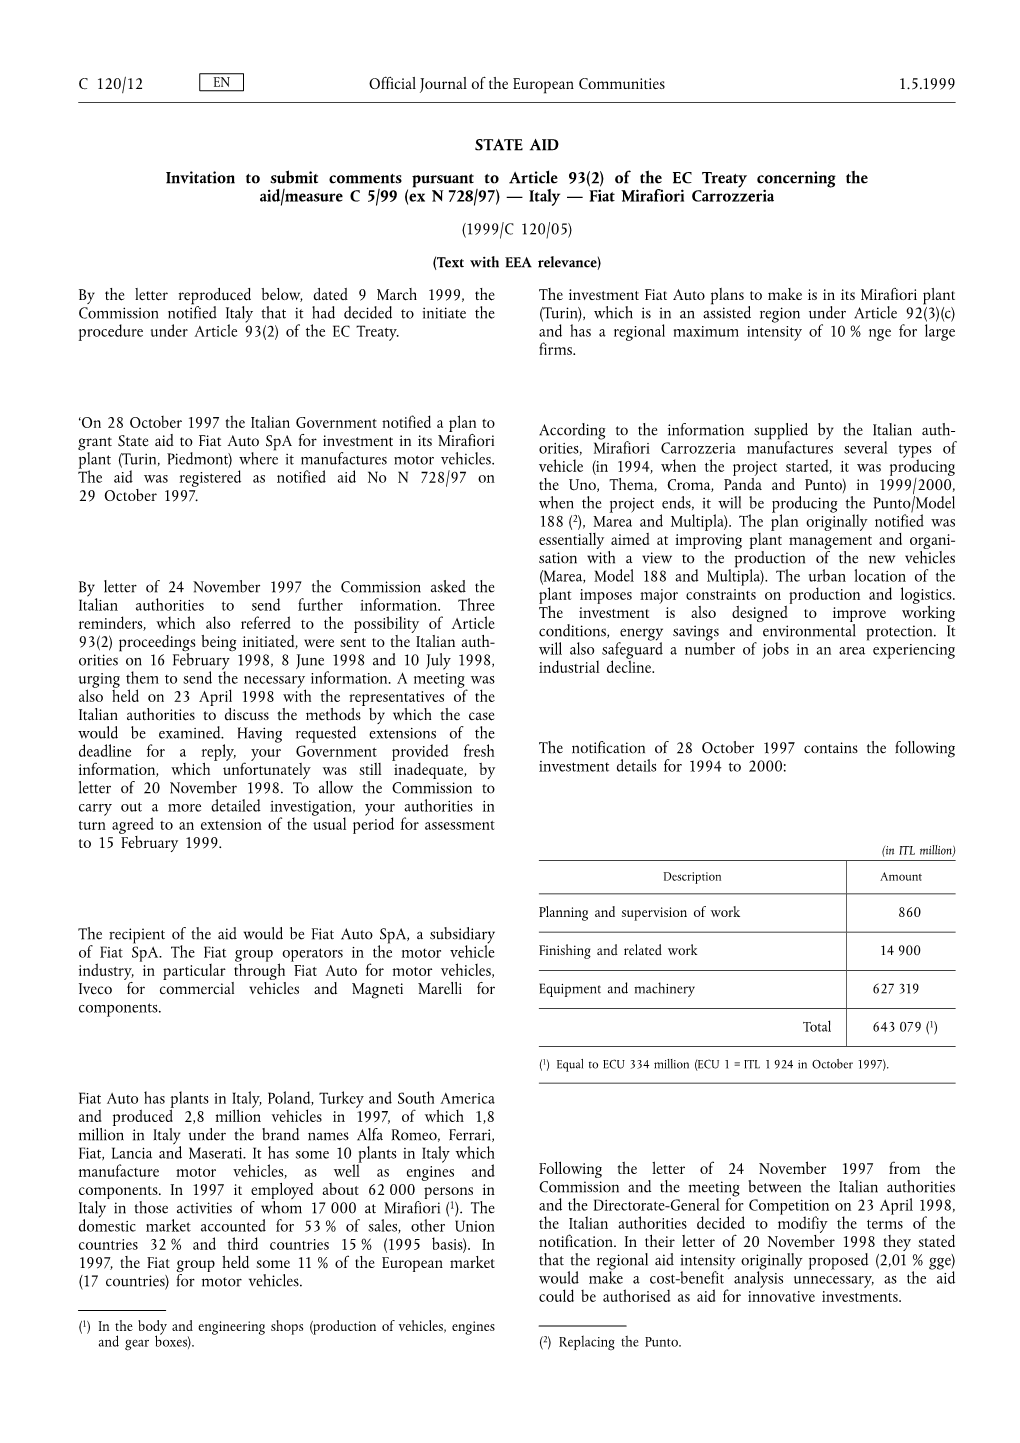 Of the EC Treaty Concerning the Aid/Measure C 5/99 (Ex N 728/97) — Italy — Fiat Mirafiori Carrozzeria (1999/C 120/05)